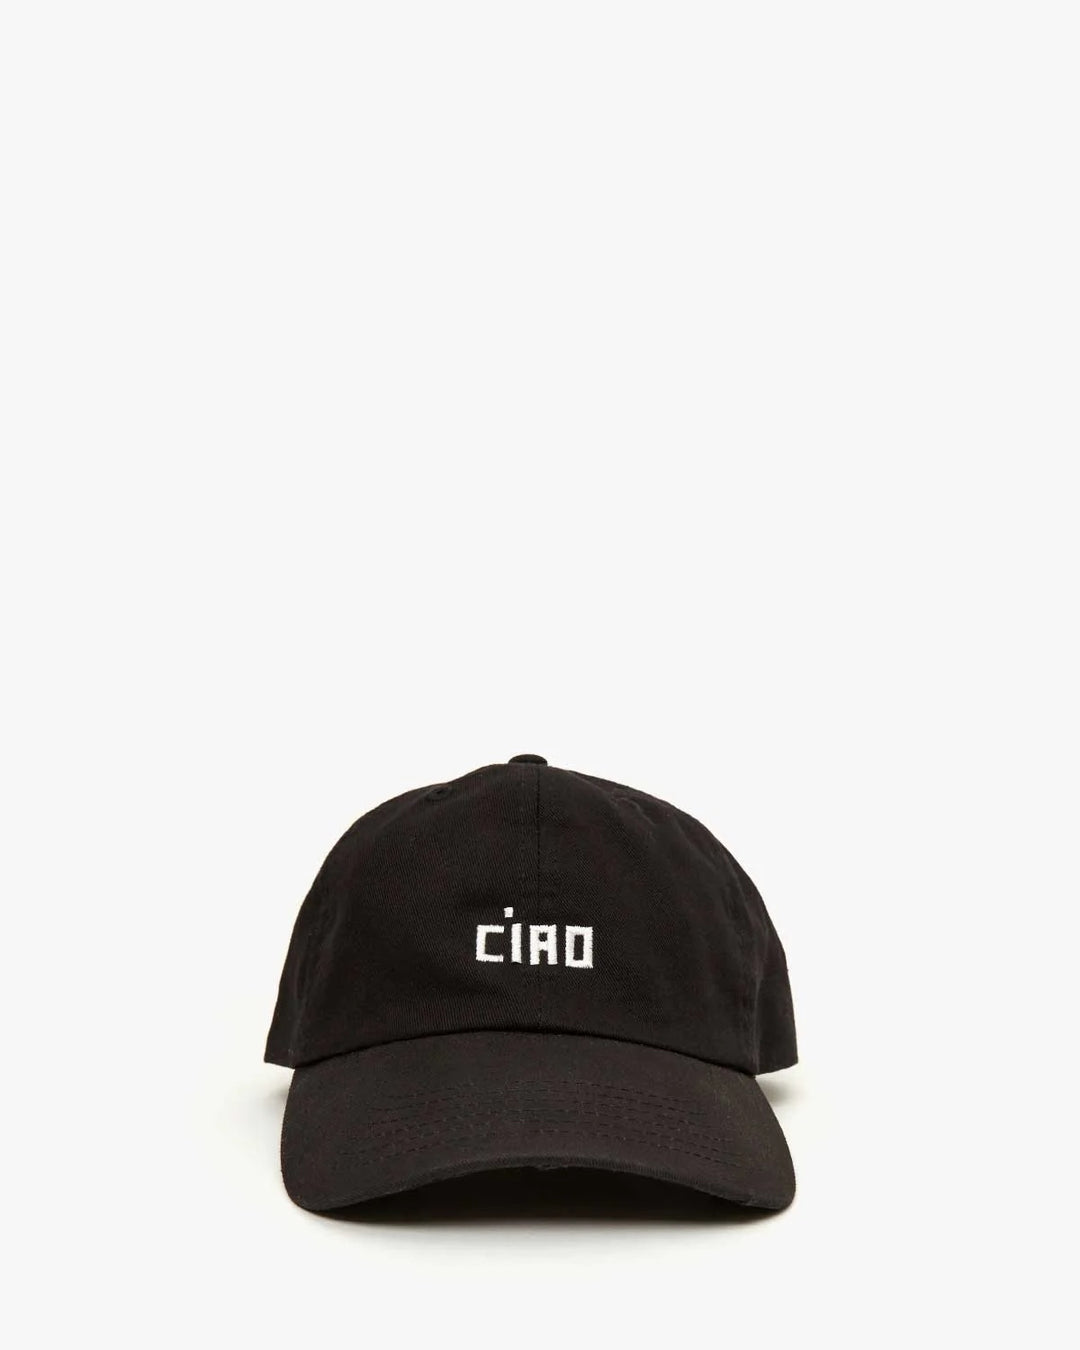 Clare V Ciao Baseball Hat